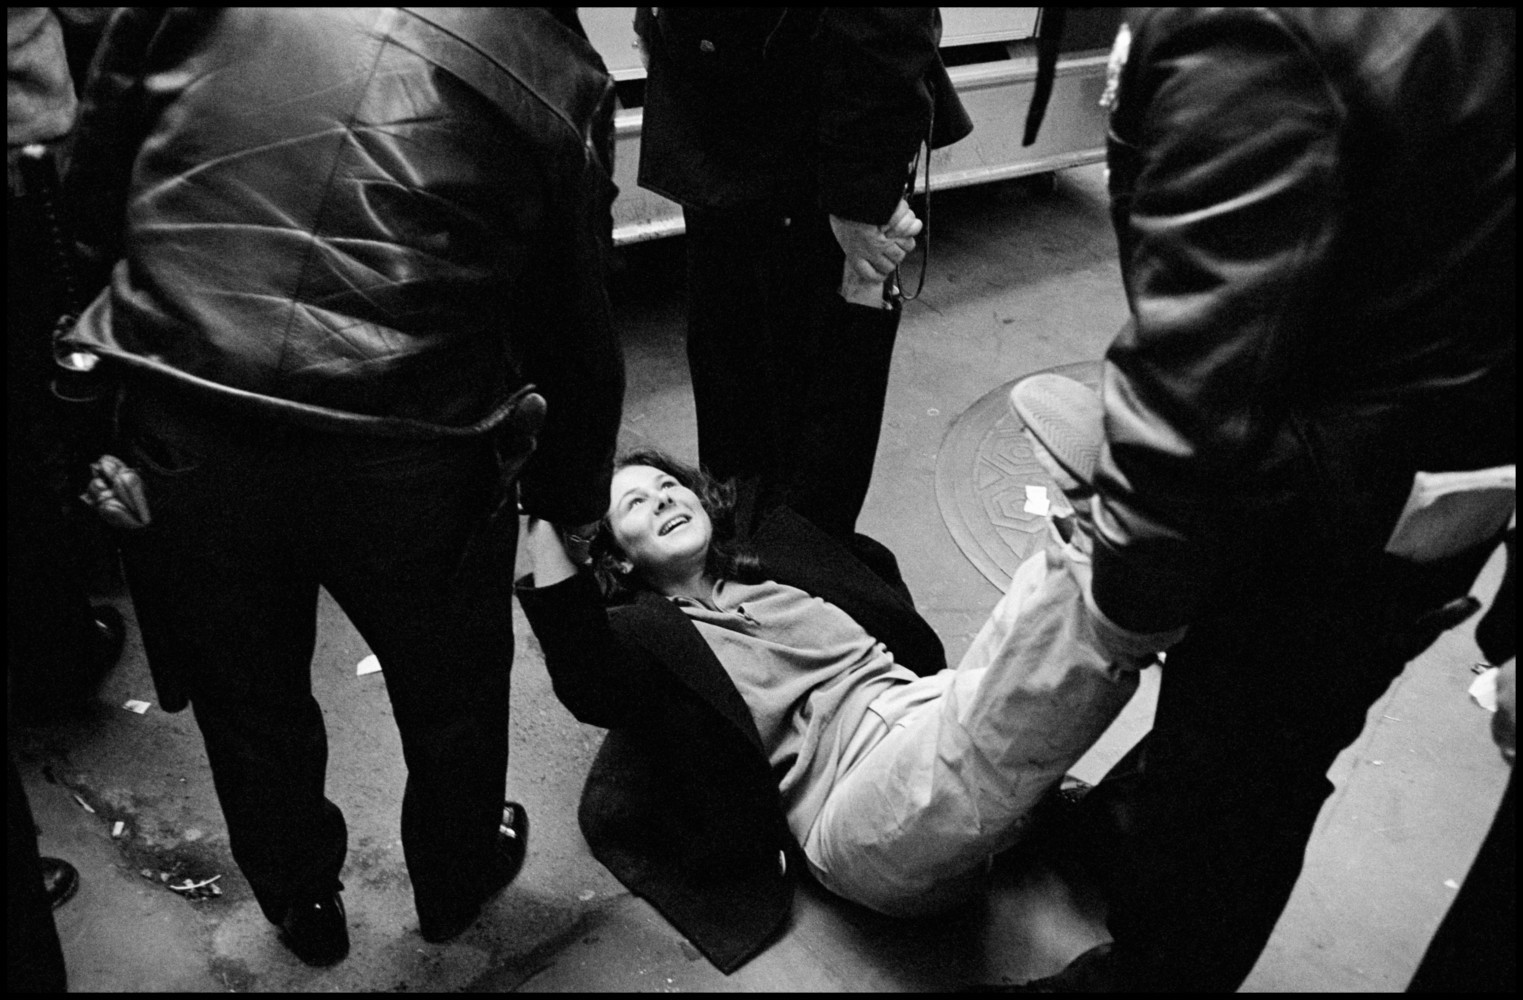 Полиция забирает антивоенных демонстрантов, Нью-Йорк, США, 1979. Фотограф Леонард Фрид